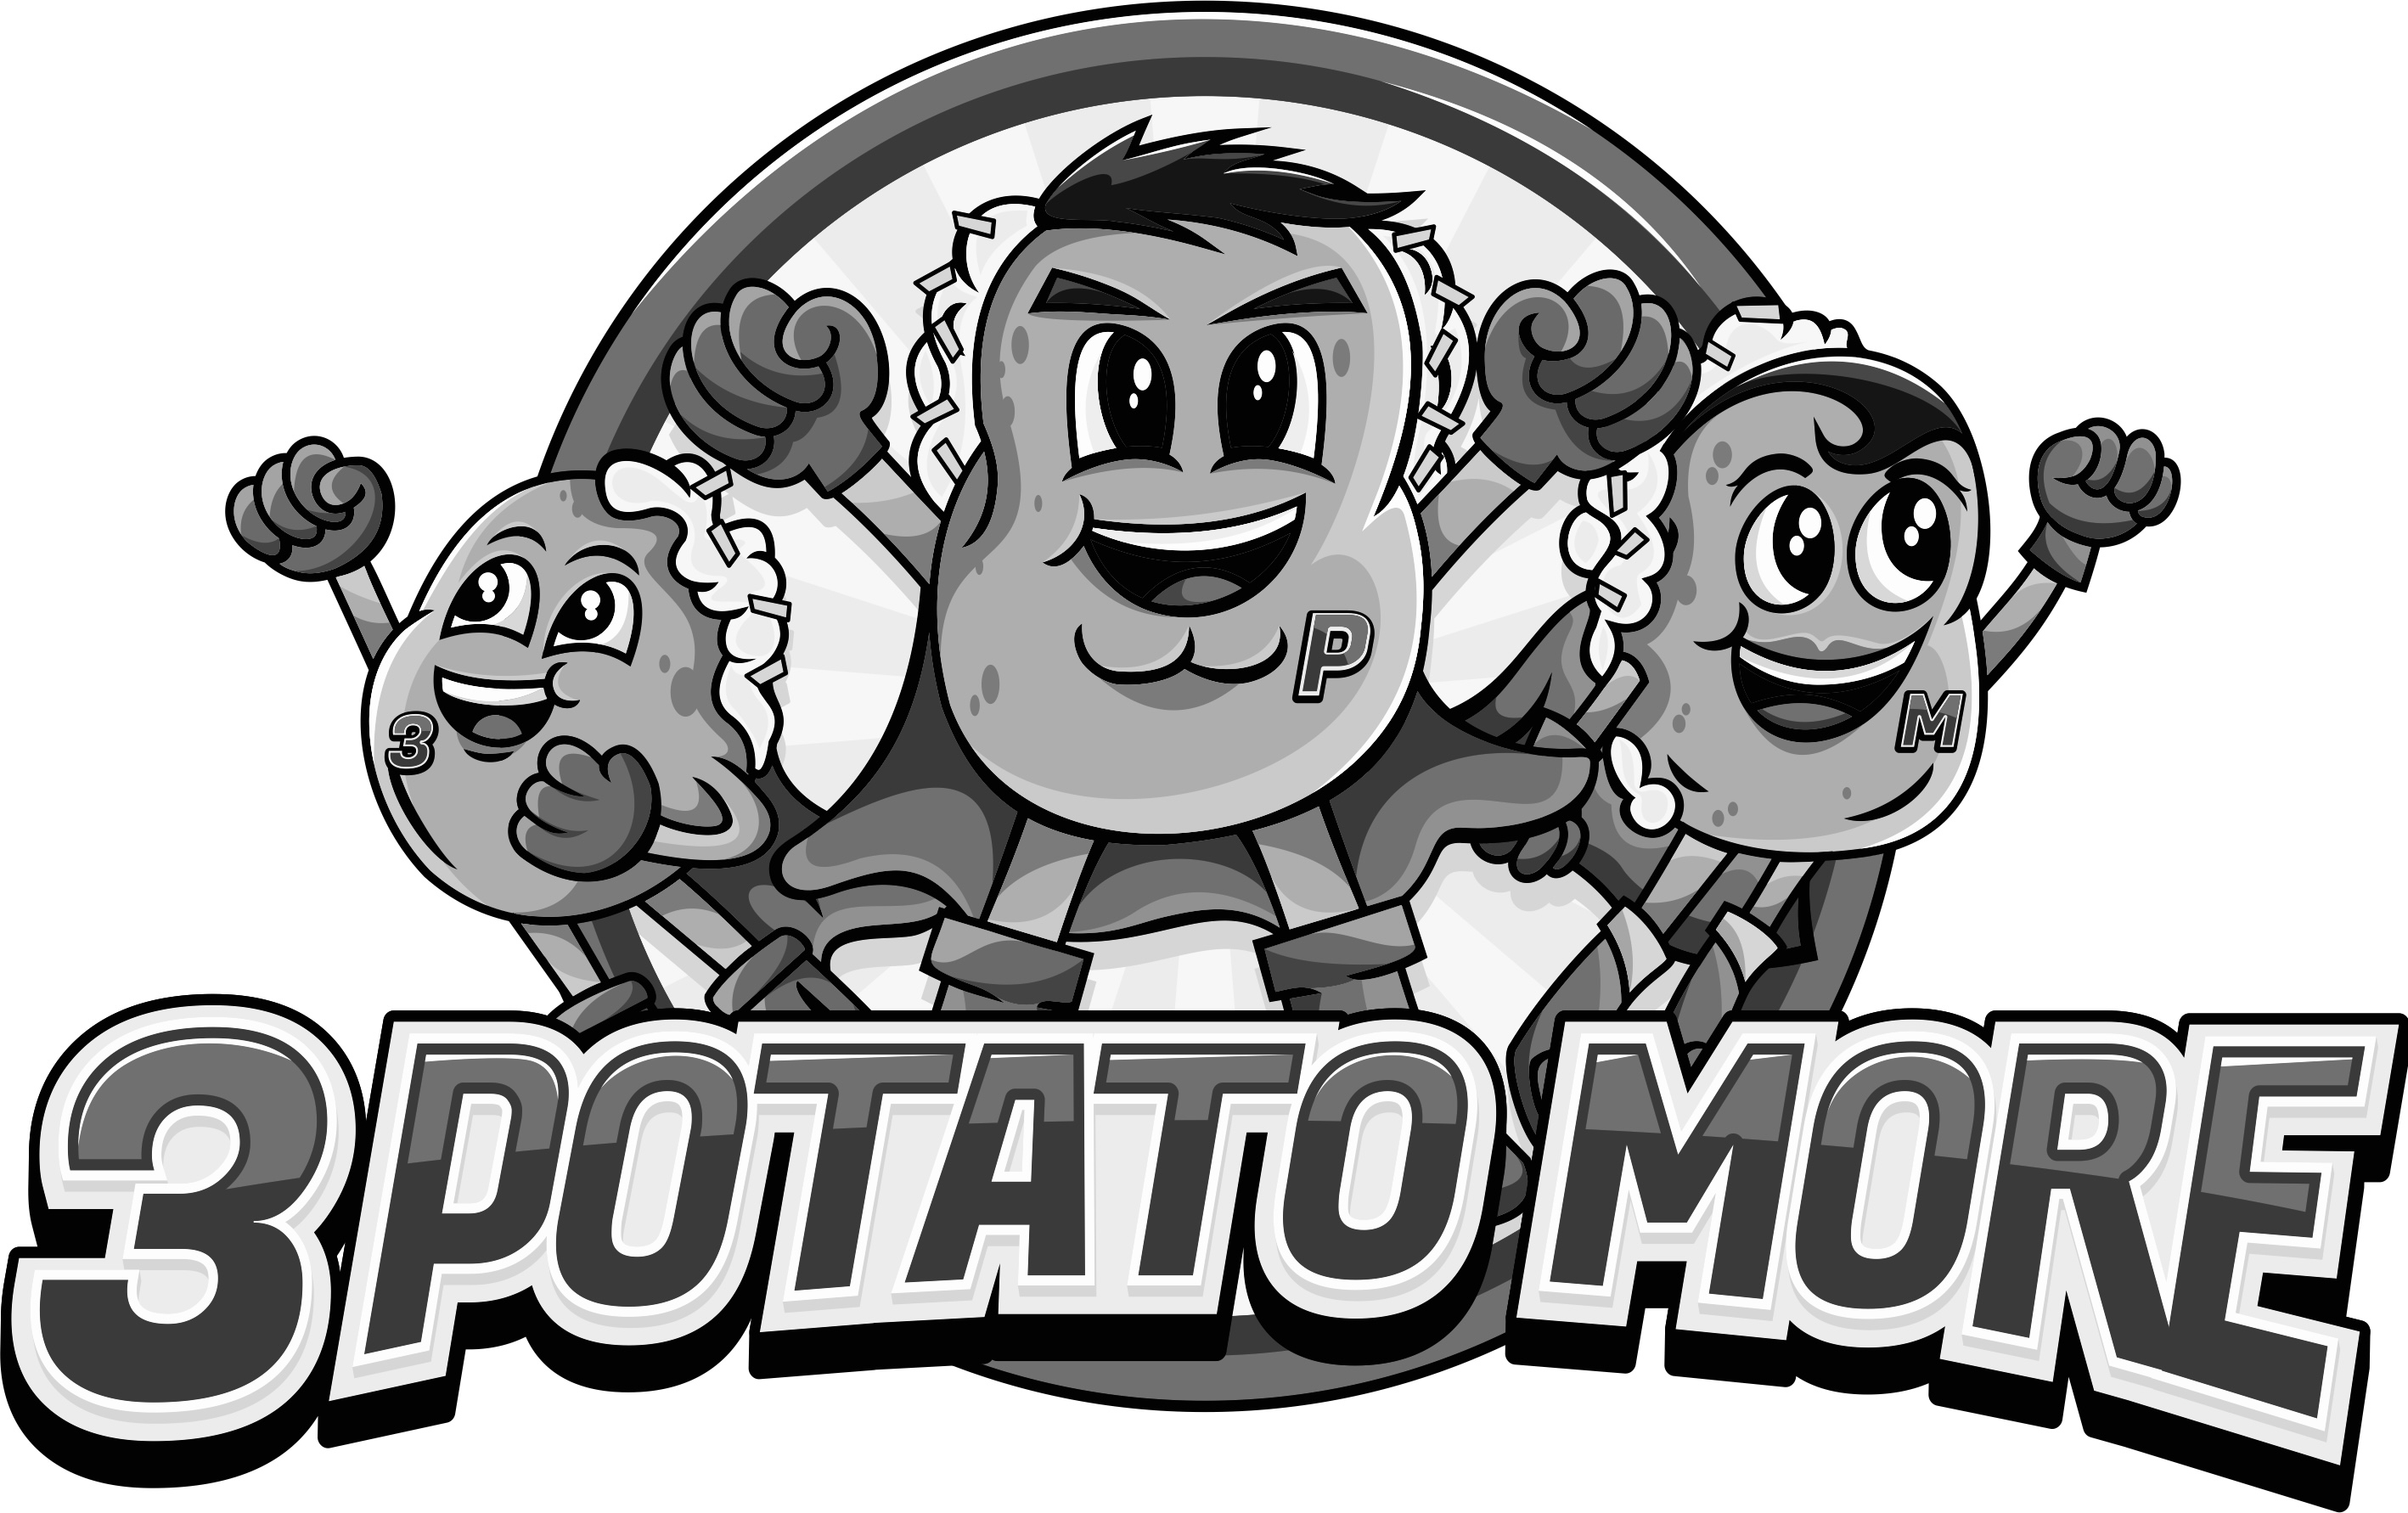 3 Potato More food truck profile image